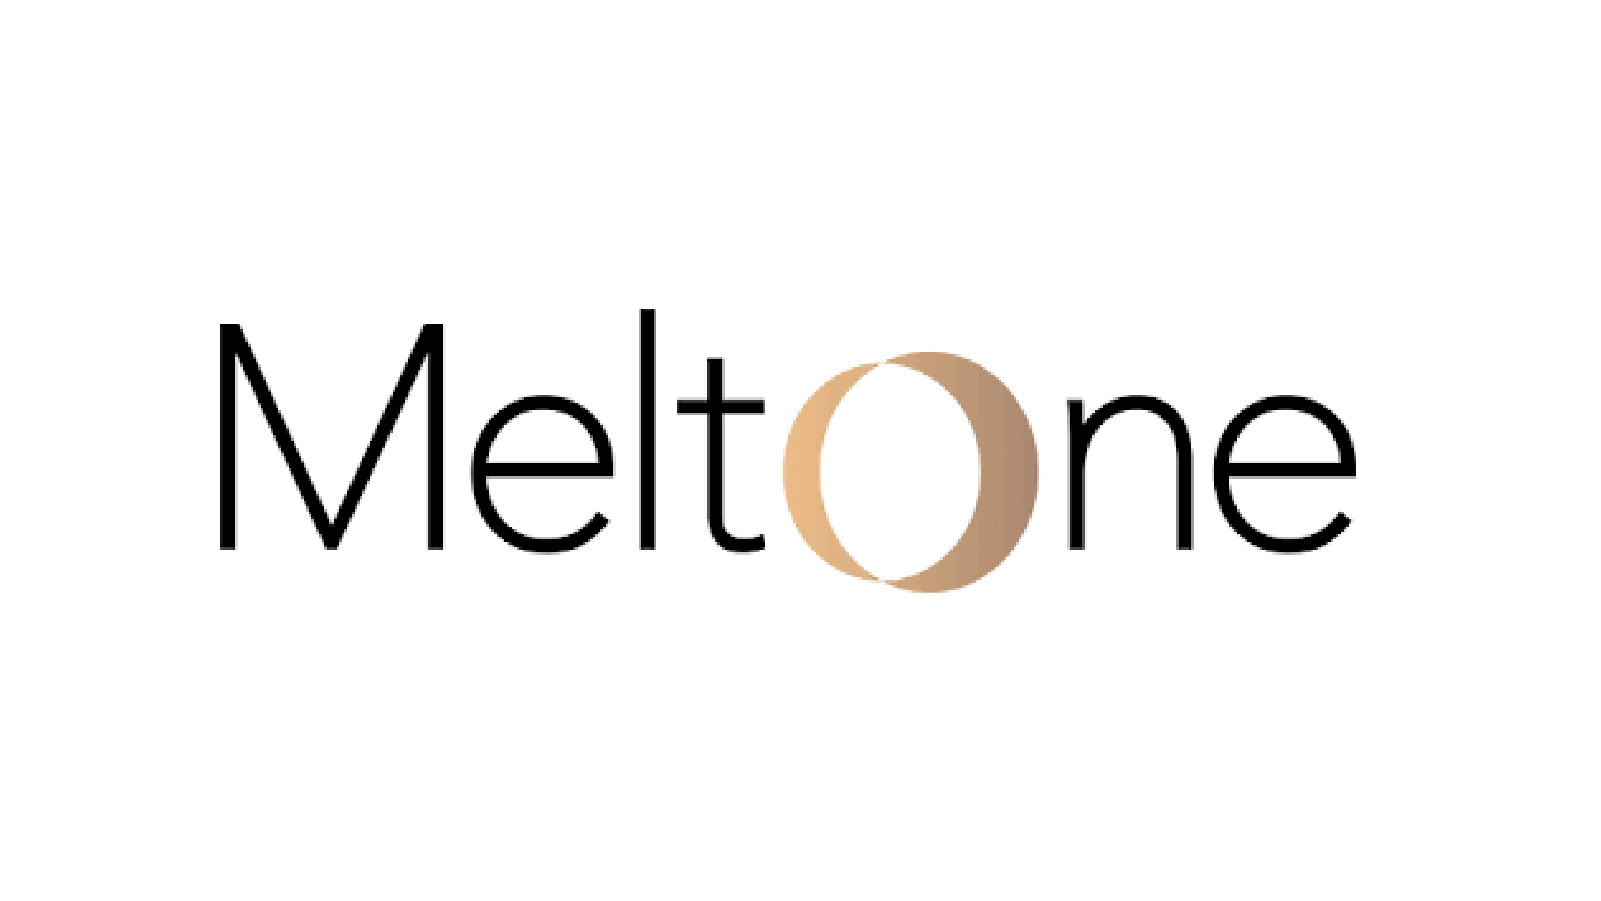 Meltone logo